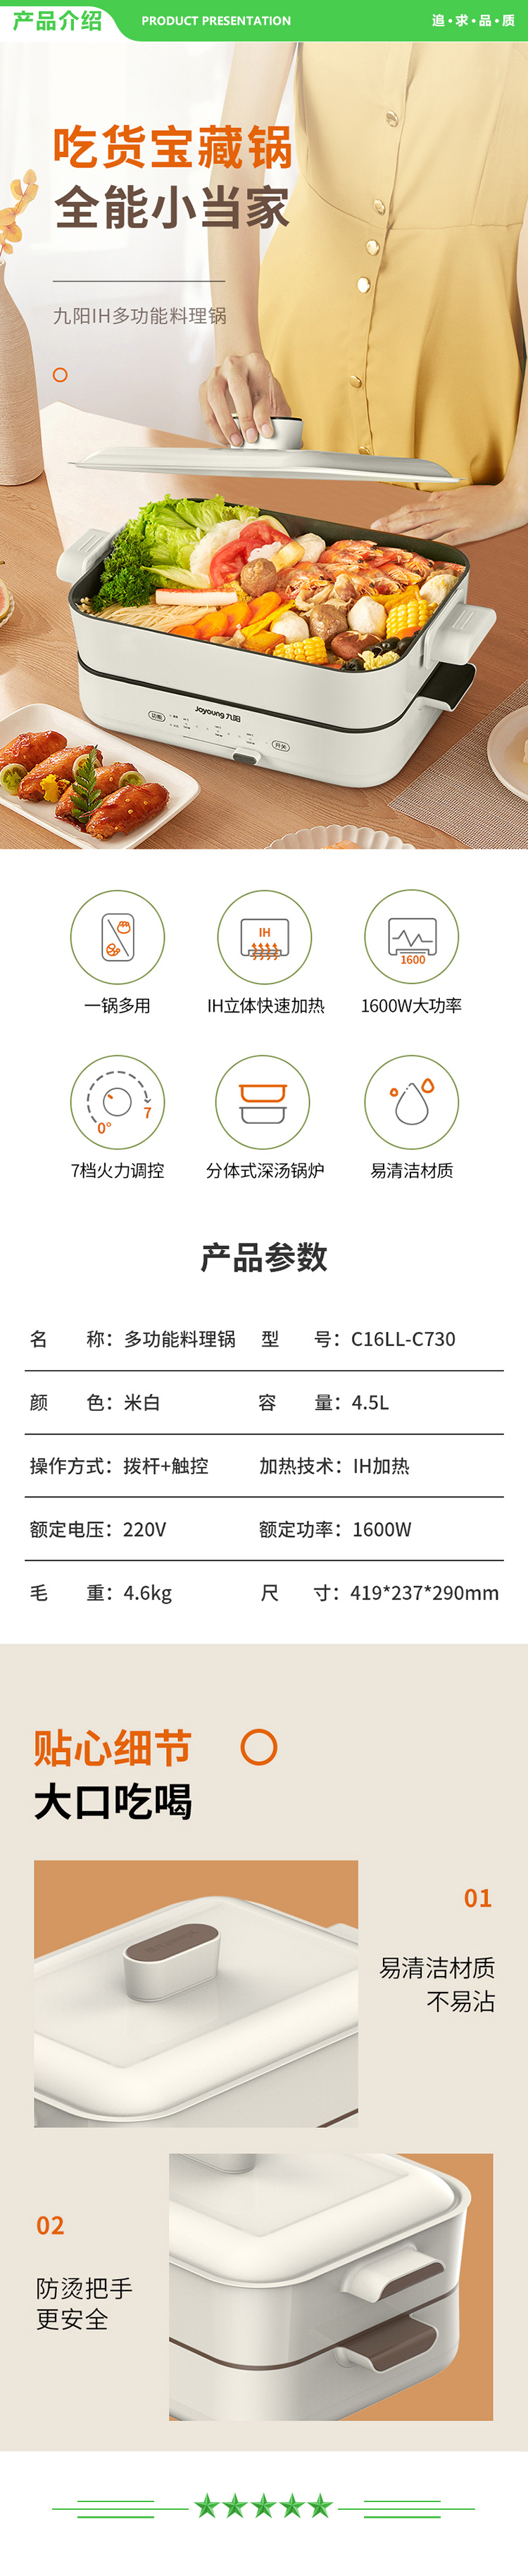 九阳 Joyoung C16LL-C730 多功能料理锅4L电火锅电煮锅.jpg